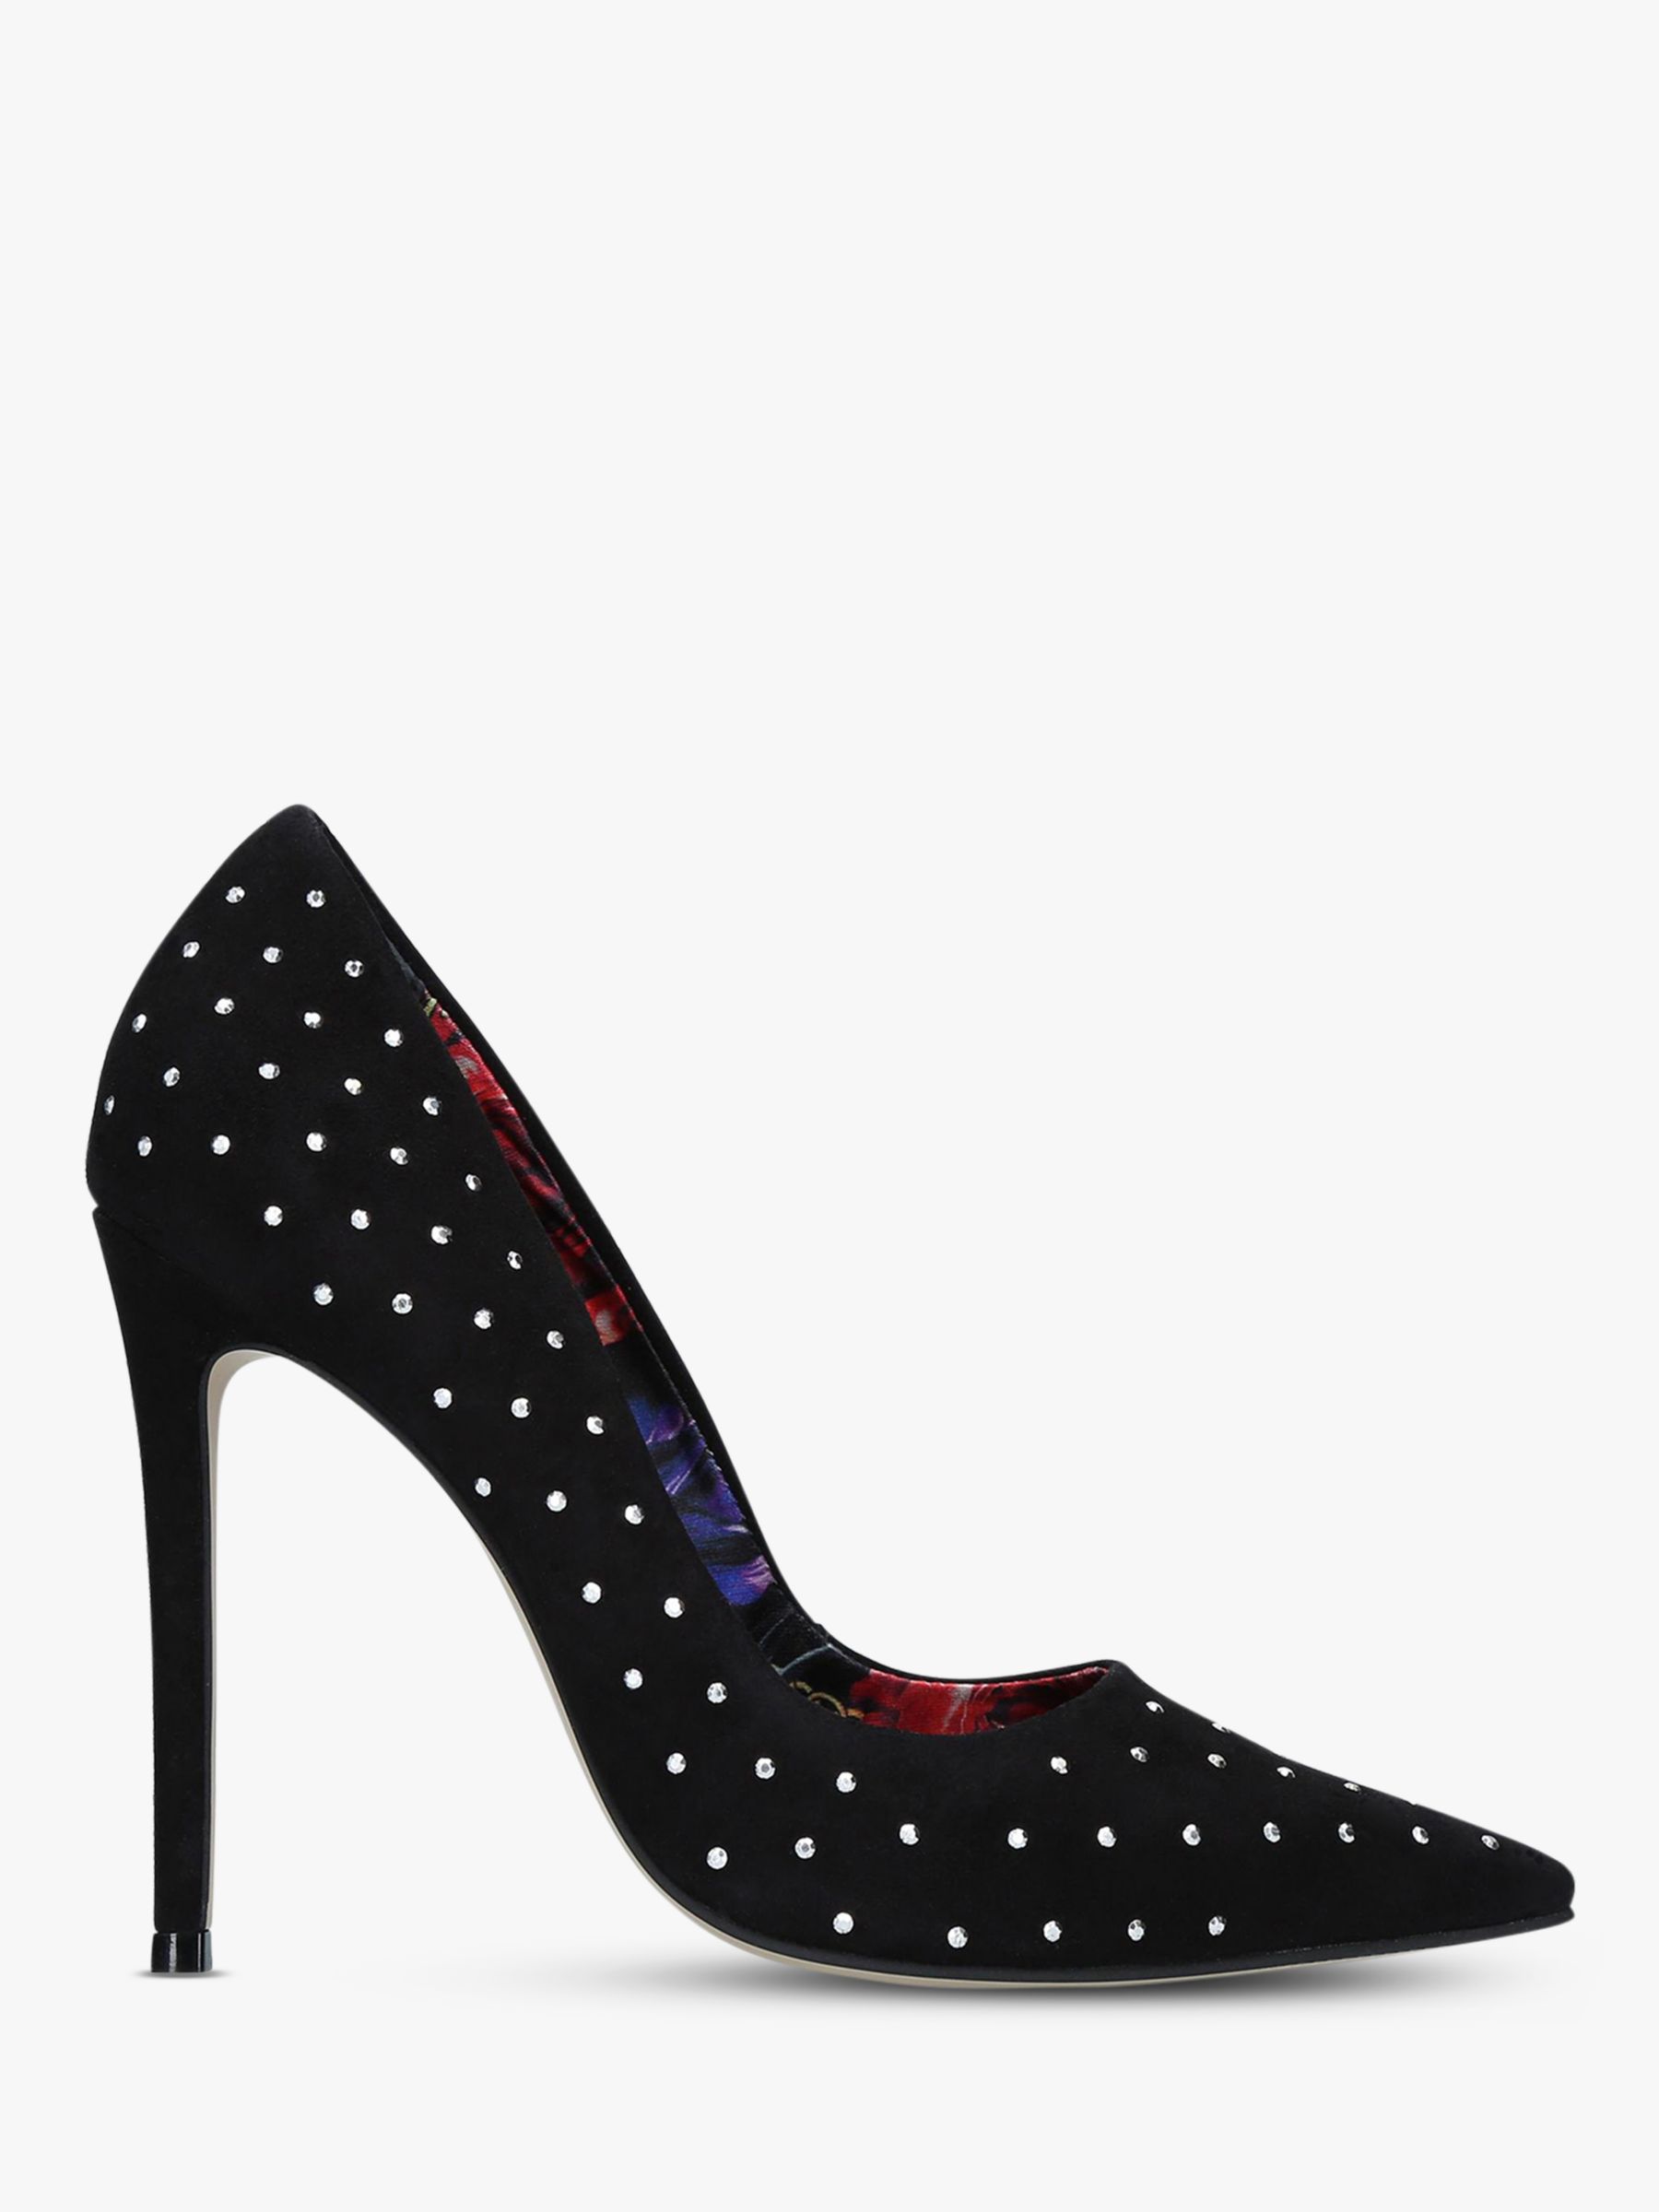 Carvela Alice Jewel Embellished Court Shoes, Black Suede